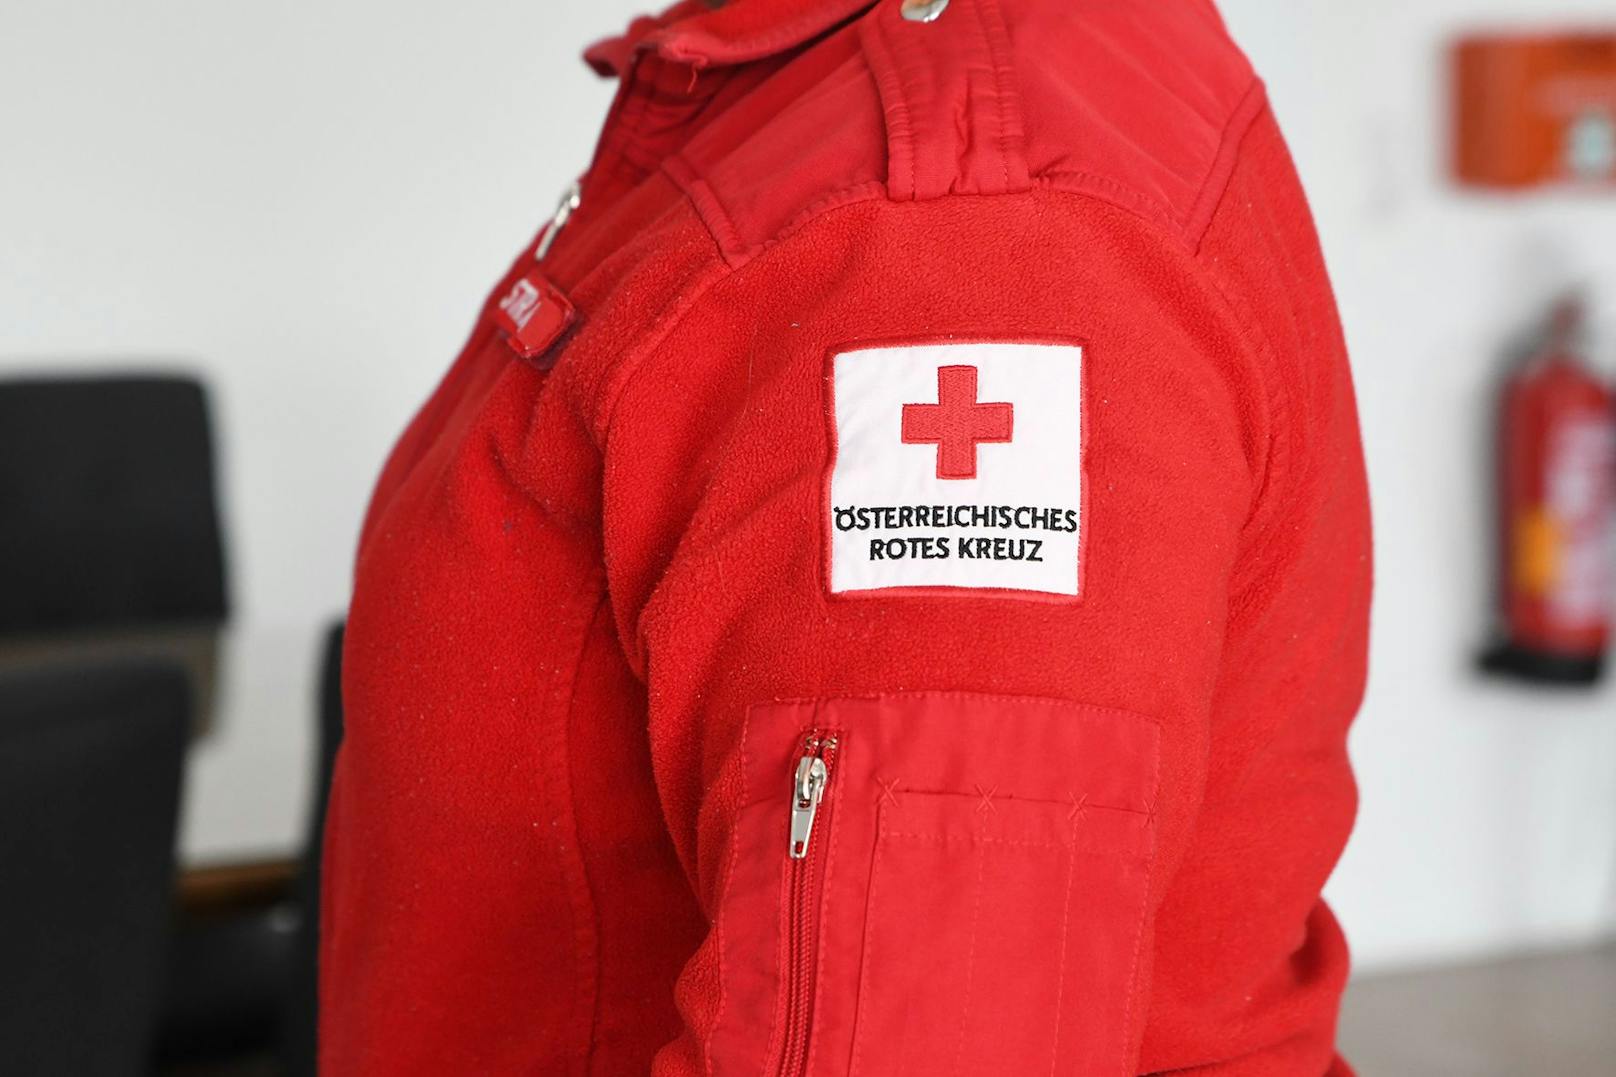 Beim Österreichischen Roten Kreuz wurden Beweismittel sichergestellt. (Symbolbild)